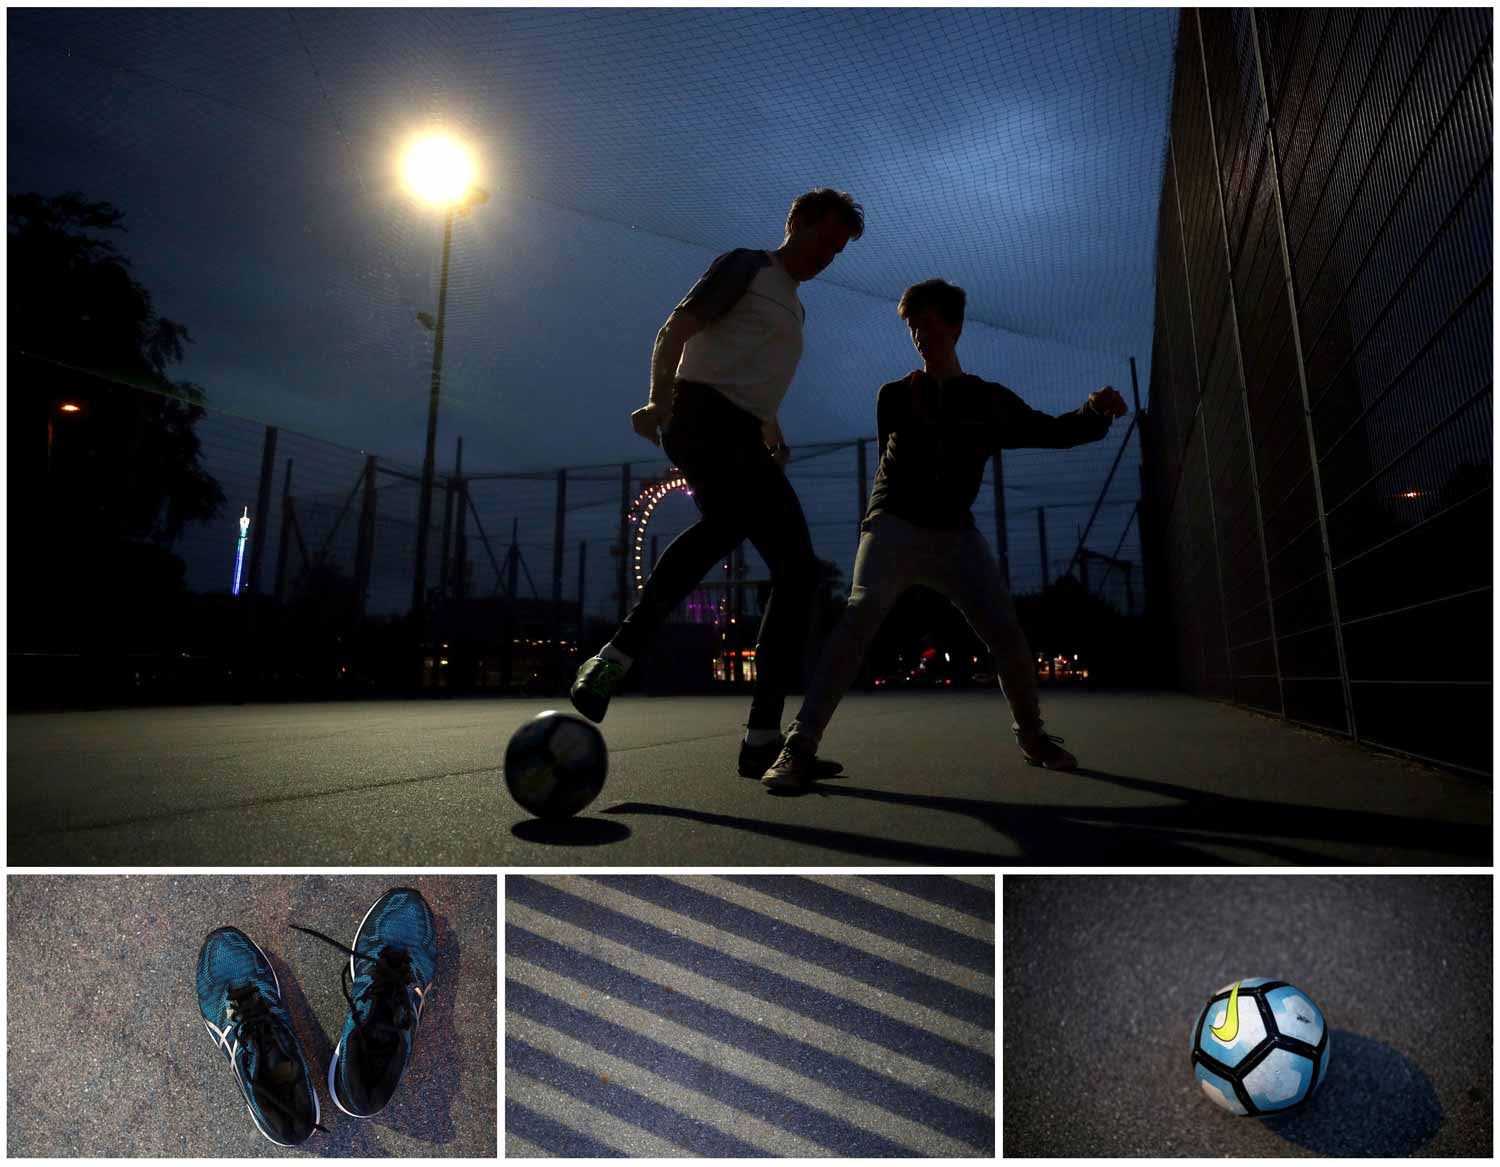  Durante a noite tamb&eacute;m se joga futebol. Dois jovens disputam uma bola num campo  em frente &agrave; roda gigante de Vienna, na &Aacute;ustria. Foto: Lisi Niesner - Reuters 